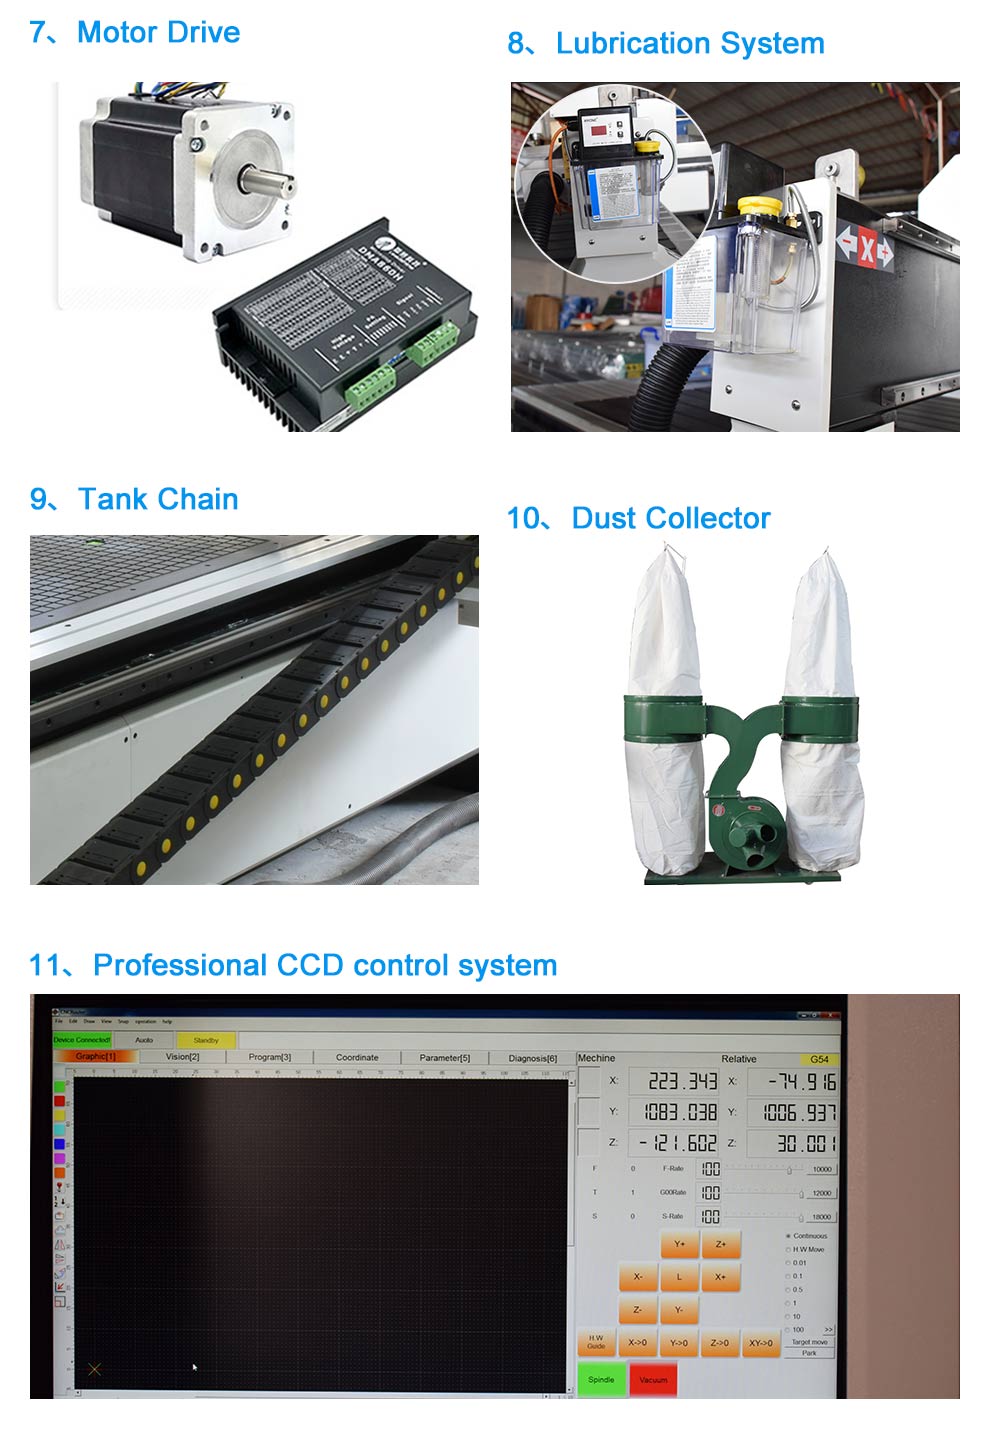 CCD Camera CNC Router Furniture Cutting Engraving Machine